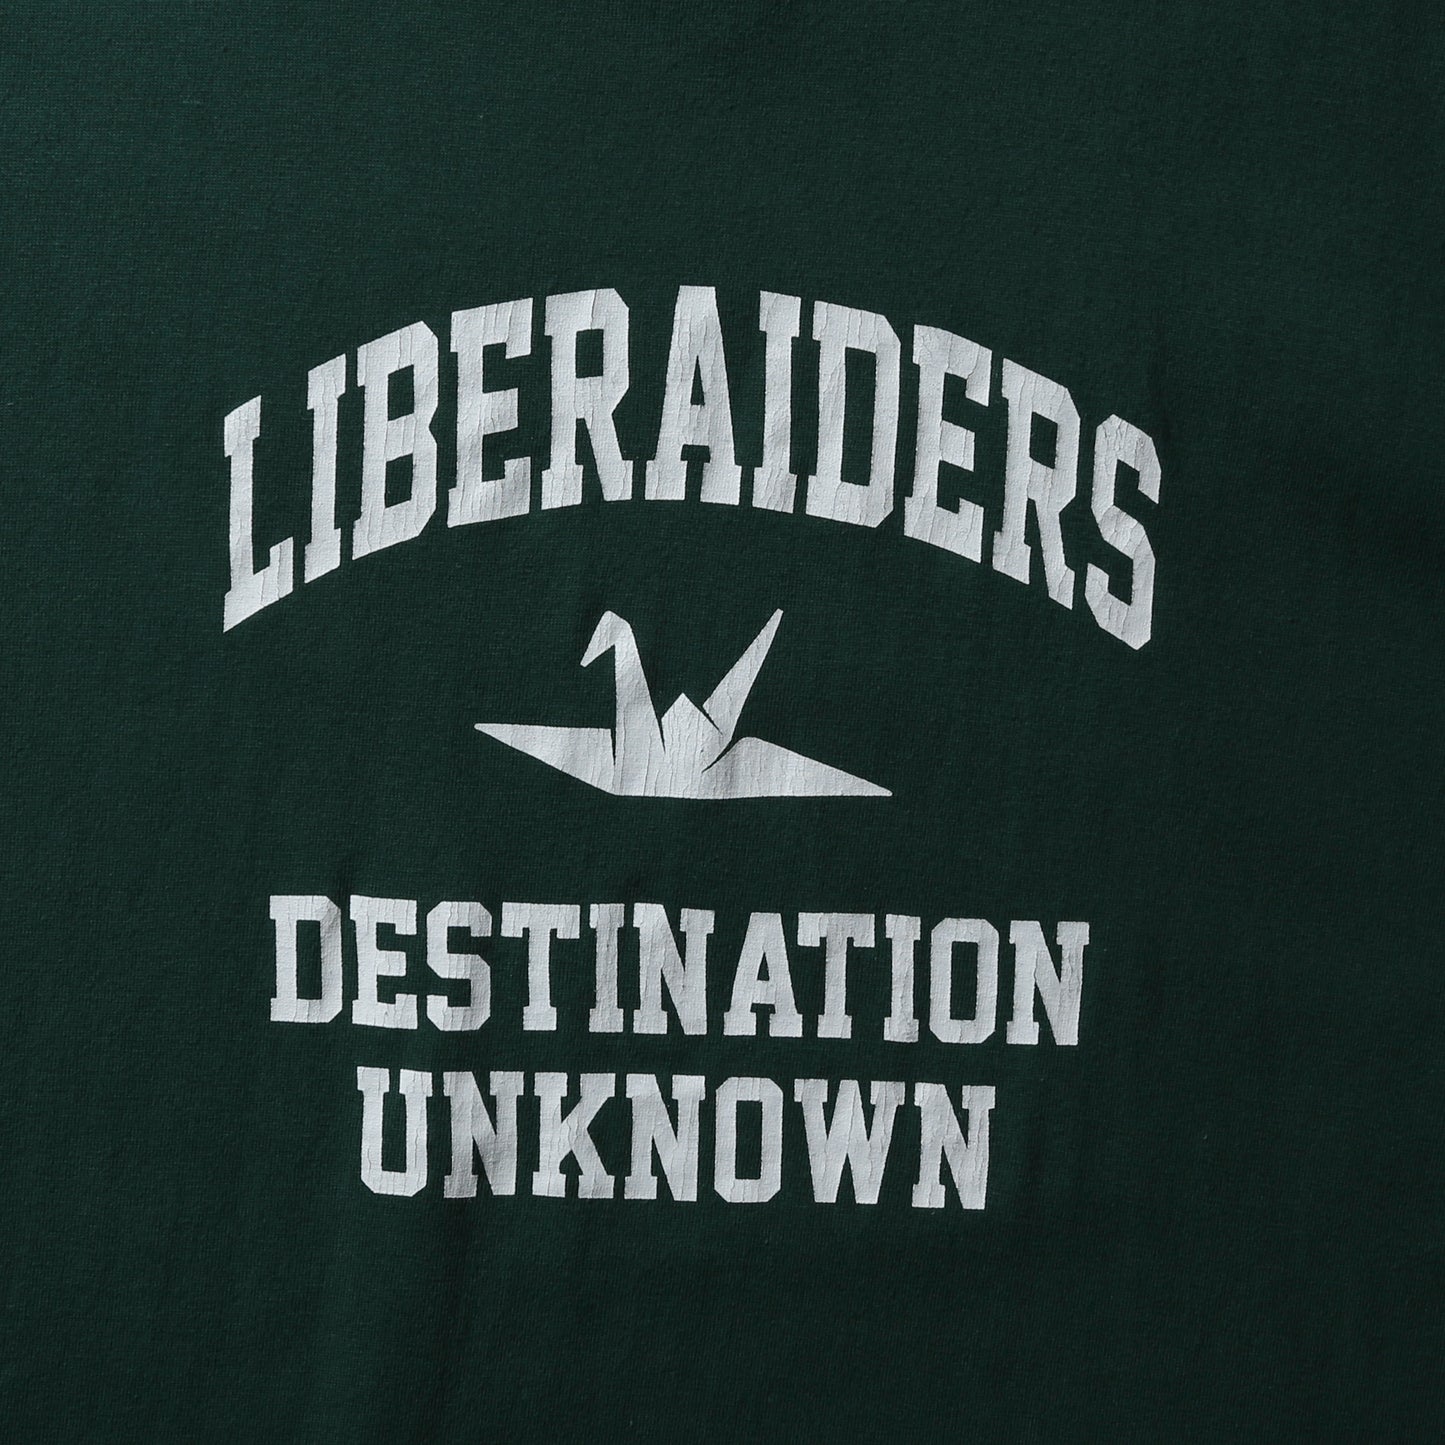 Liberaiders リベレイダース COLLEGE LOGO TEE カレッジロゴ Tシャツ 70612 グリーン